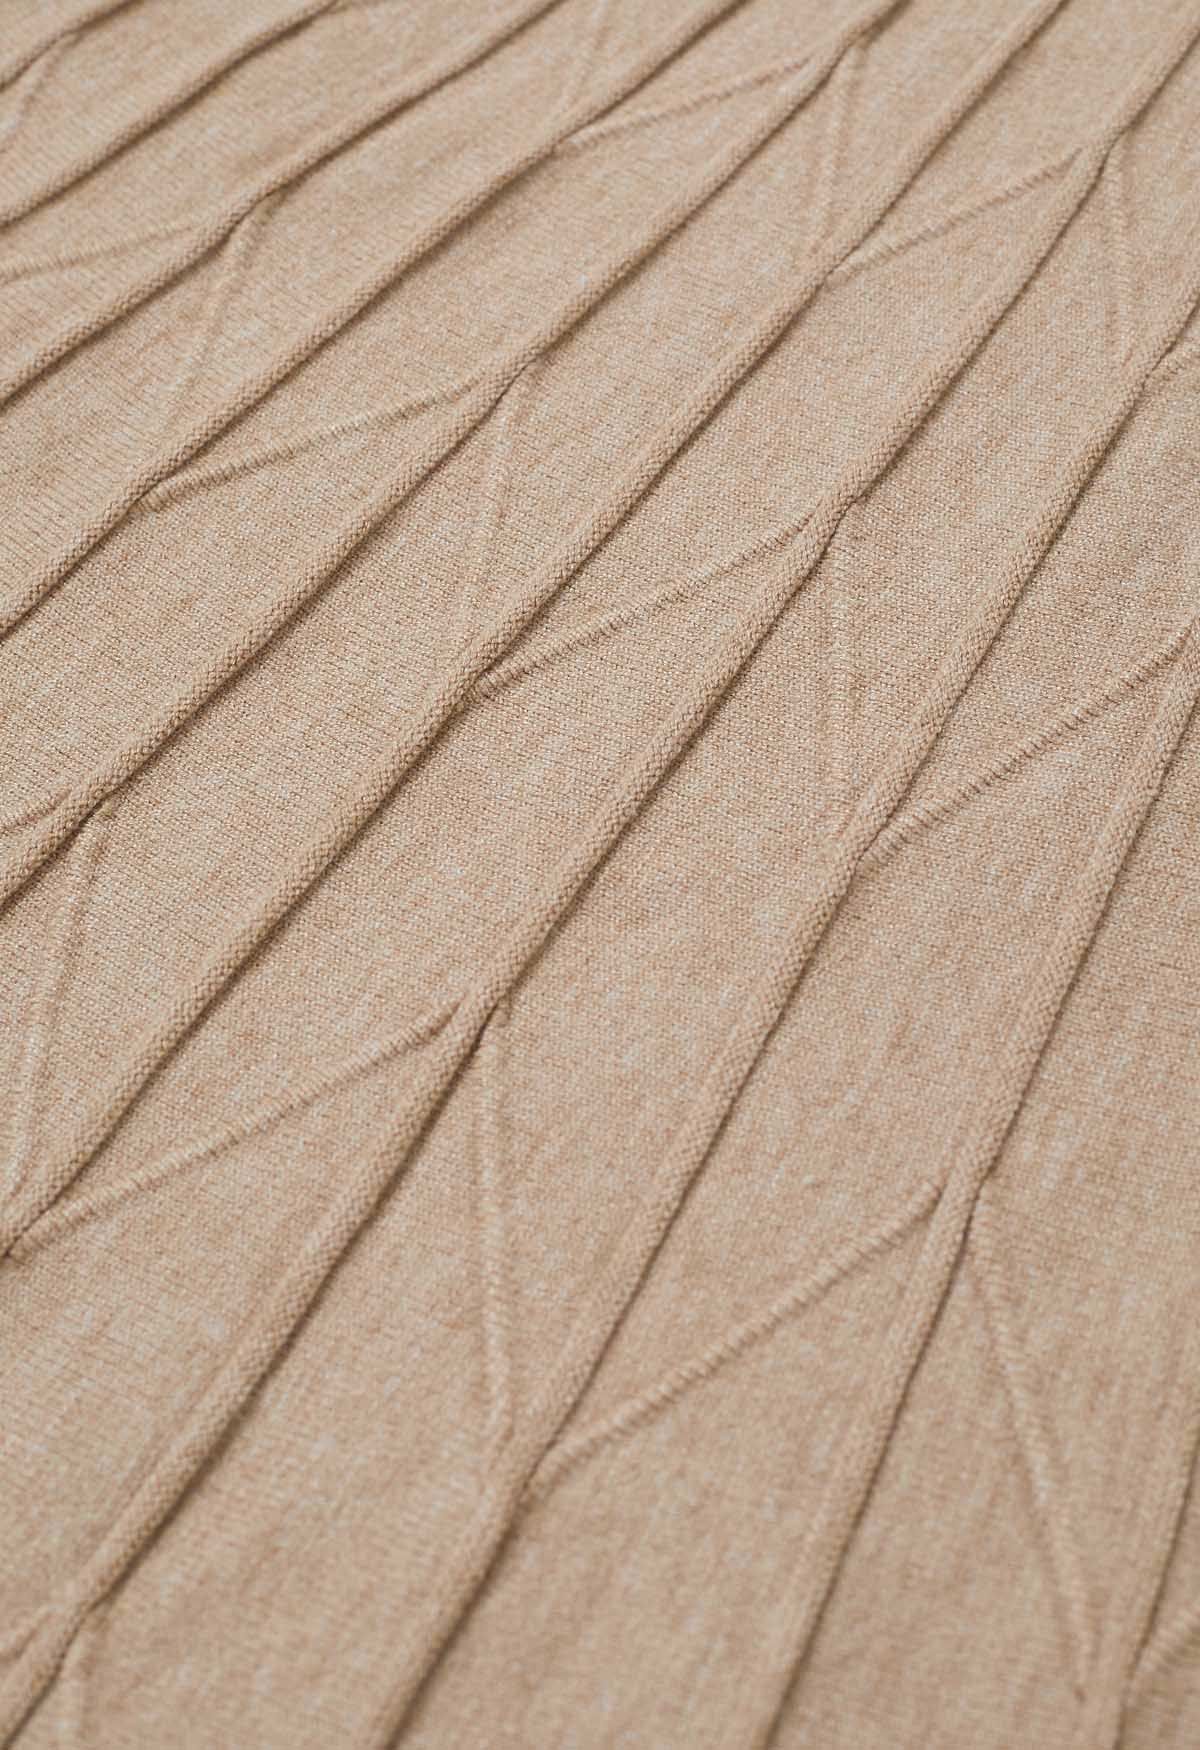 Falda de punto plisada en zigzag en color arena